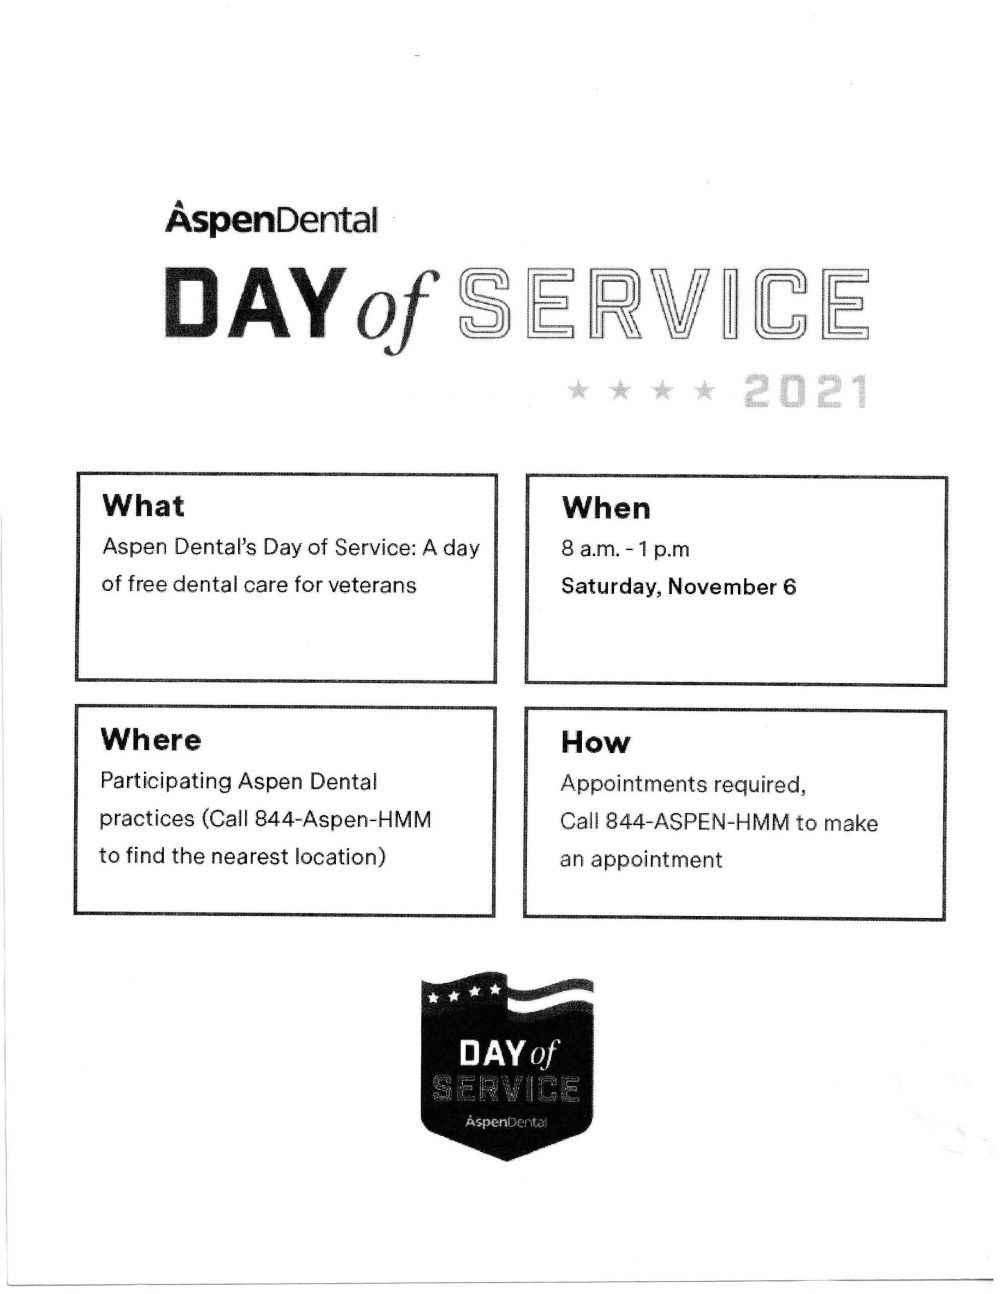 Aspen Dental Day of Service for Veterans November 6, 2021 Flyer